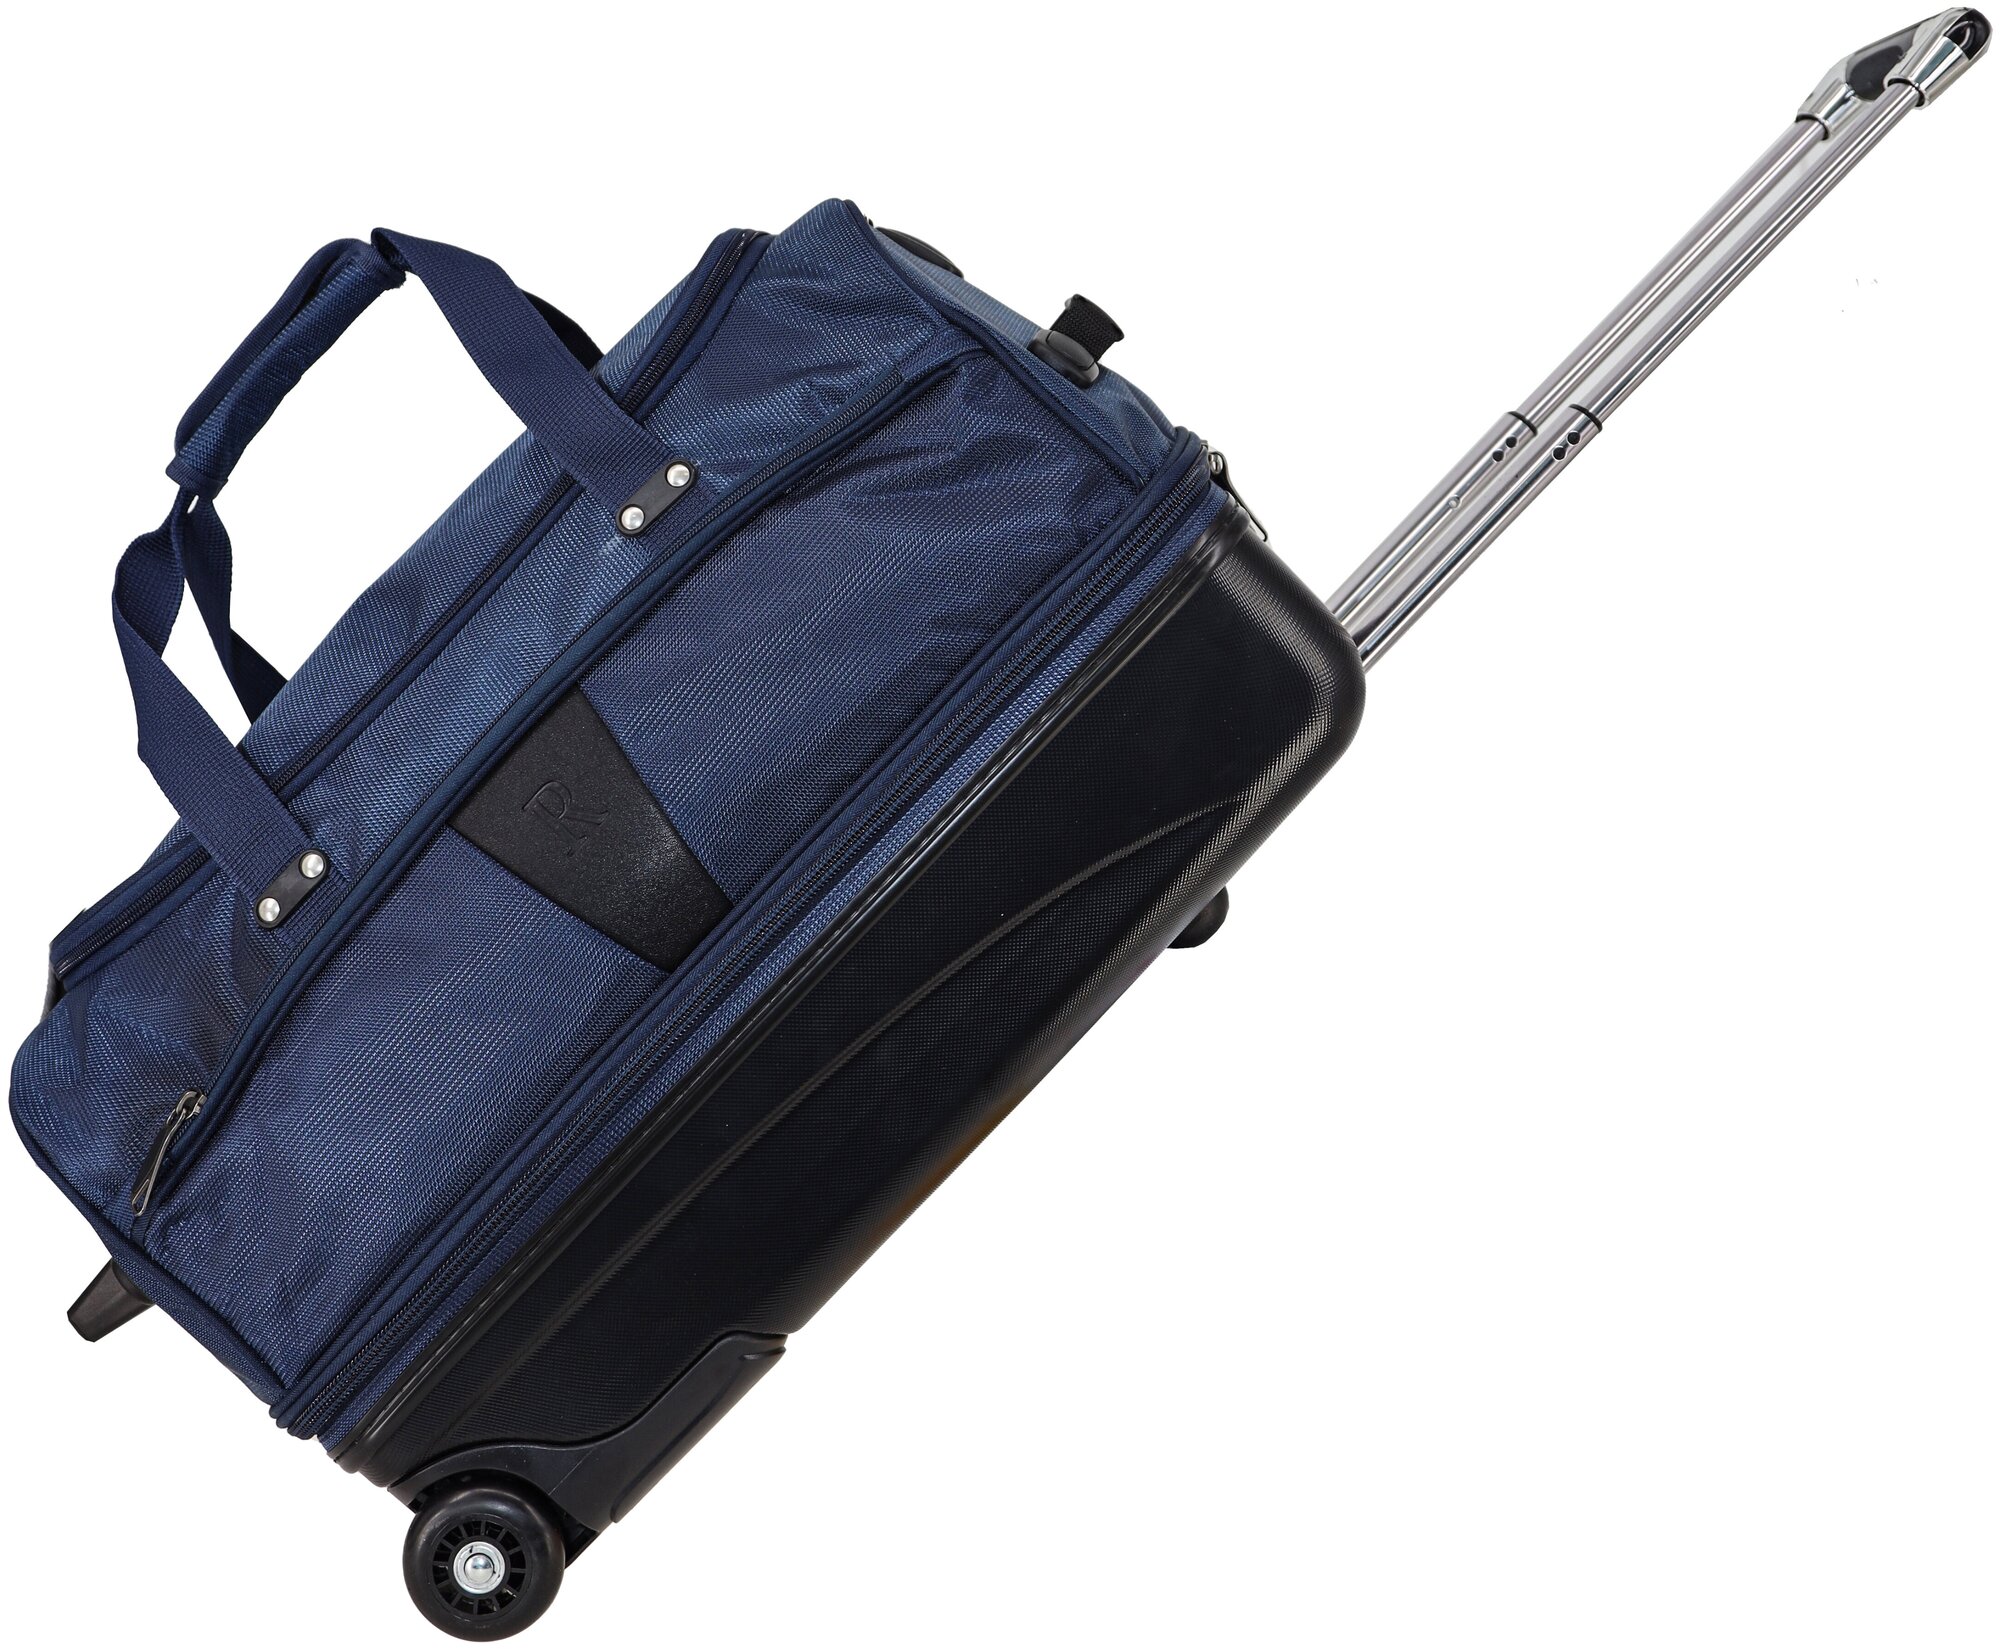 Дорожная сумка на колесах Рион+ (RION+) для путешествий и спорта R242, 66 литров, укрепленная (до 25кг), водоотталкивающая ткань, синий